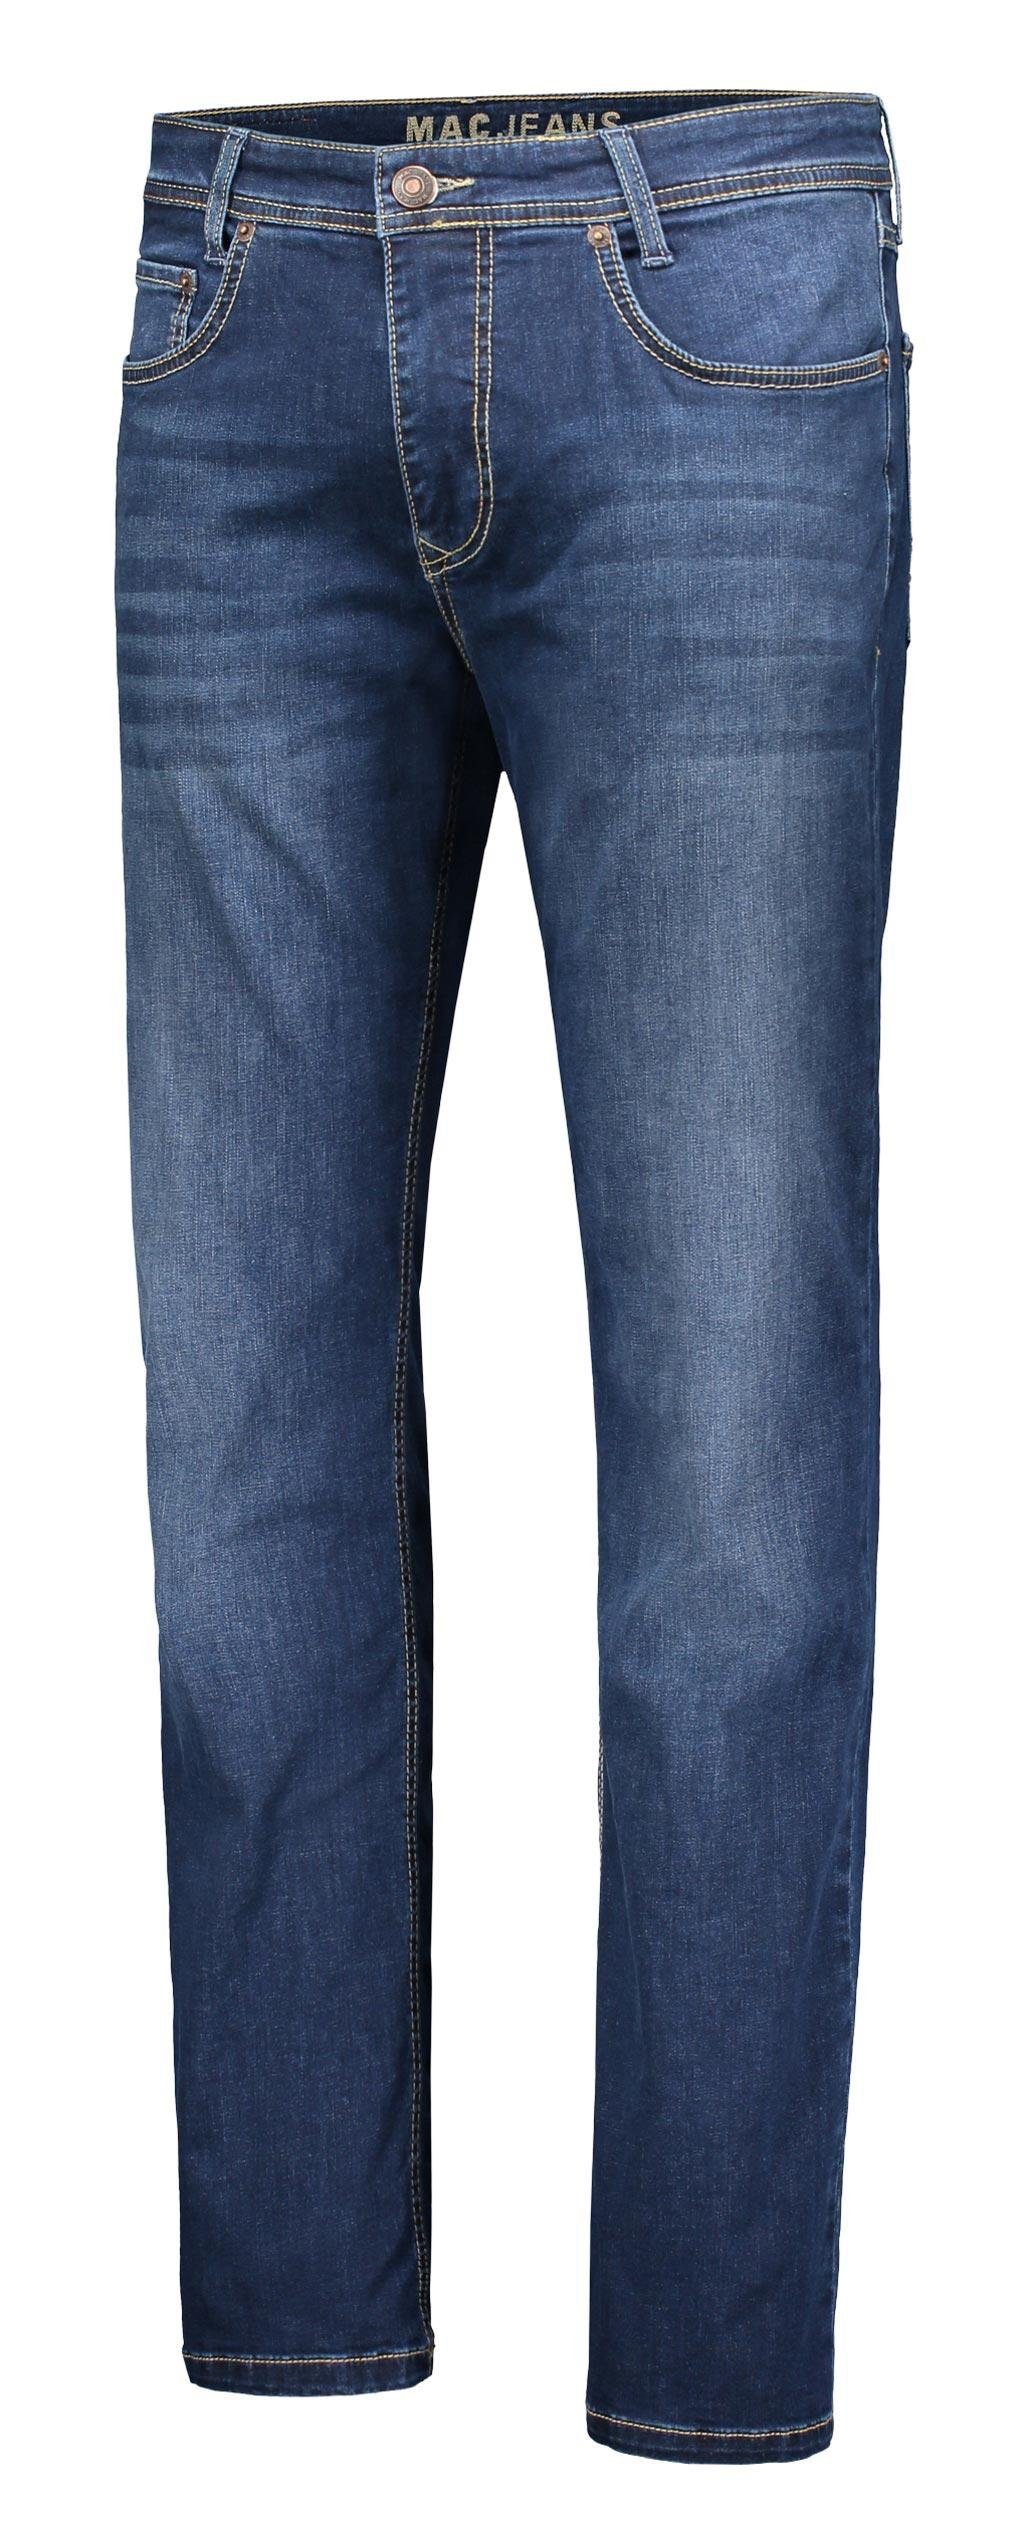 MAC 5-Pocket-Jeans wash ARNE dark H629 MAC authentic 0501-00-1792 indigo